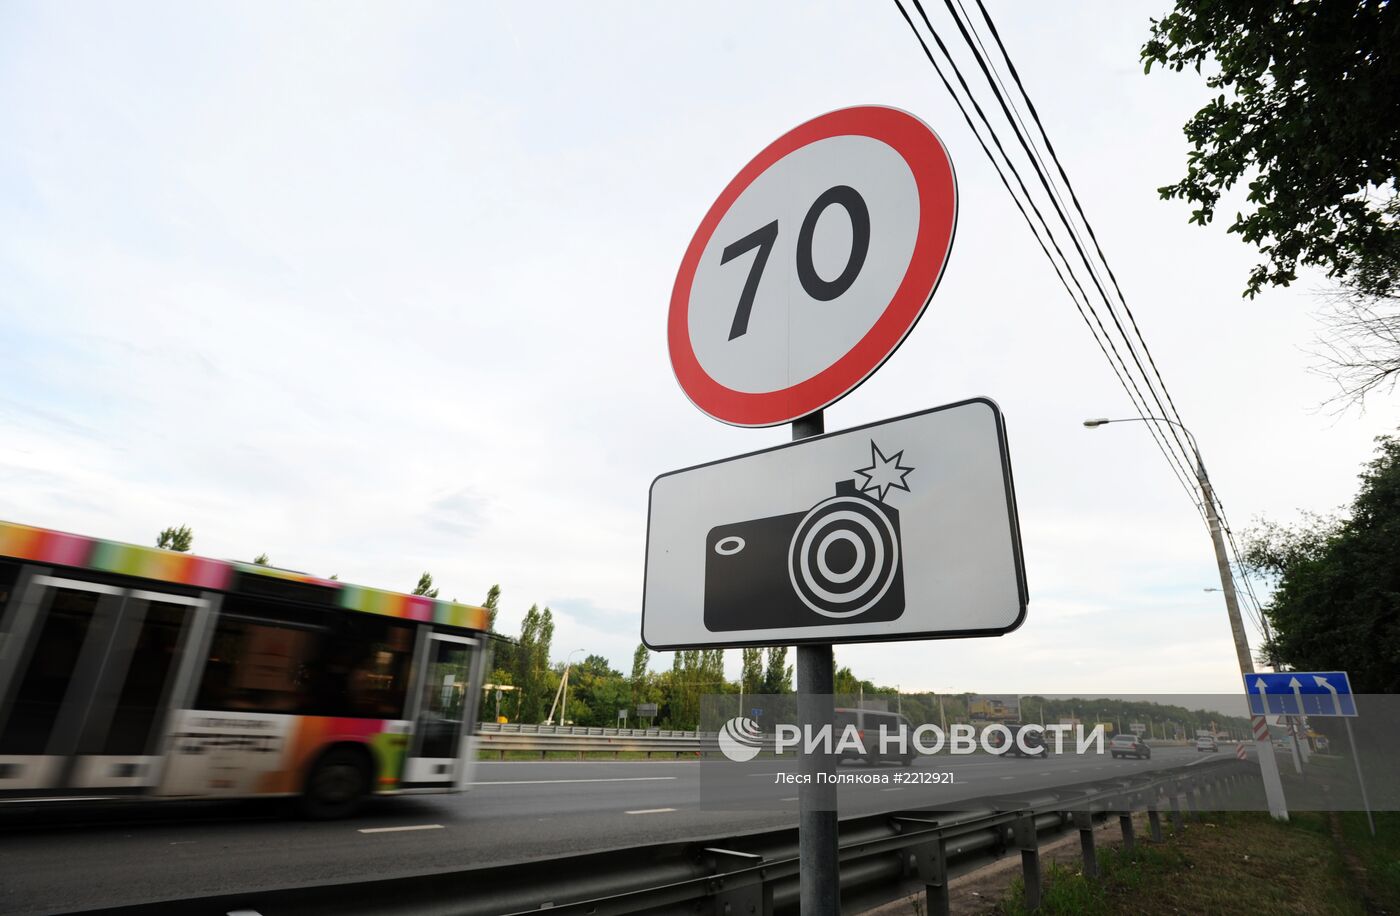 Новая разметка и знак фотовидеофиксации на российских дорогах